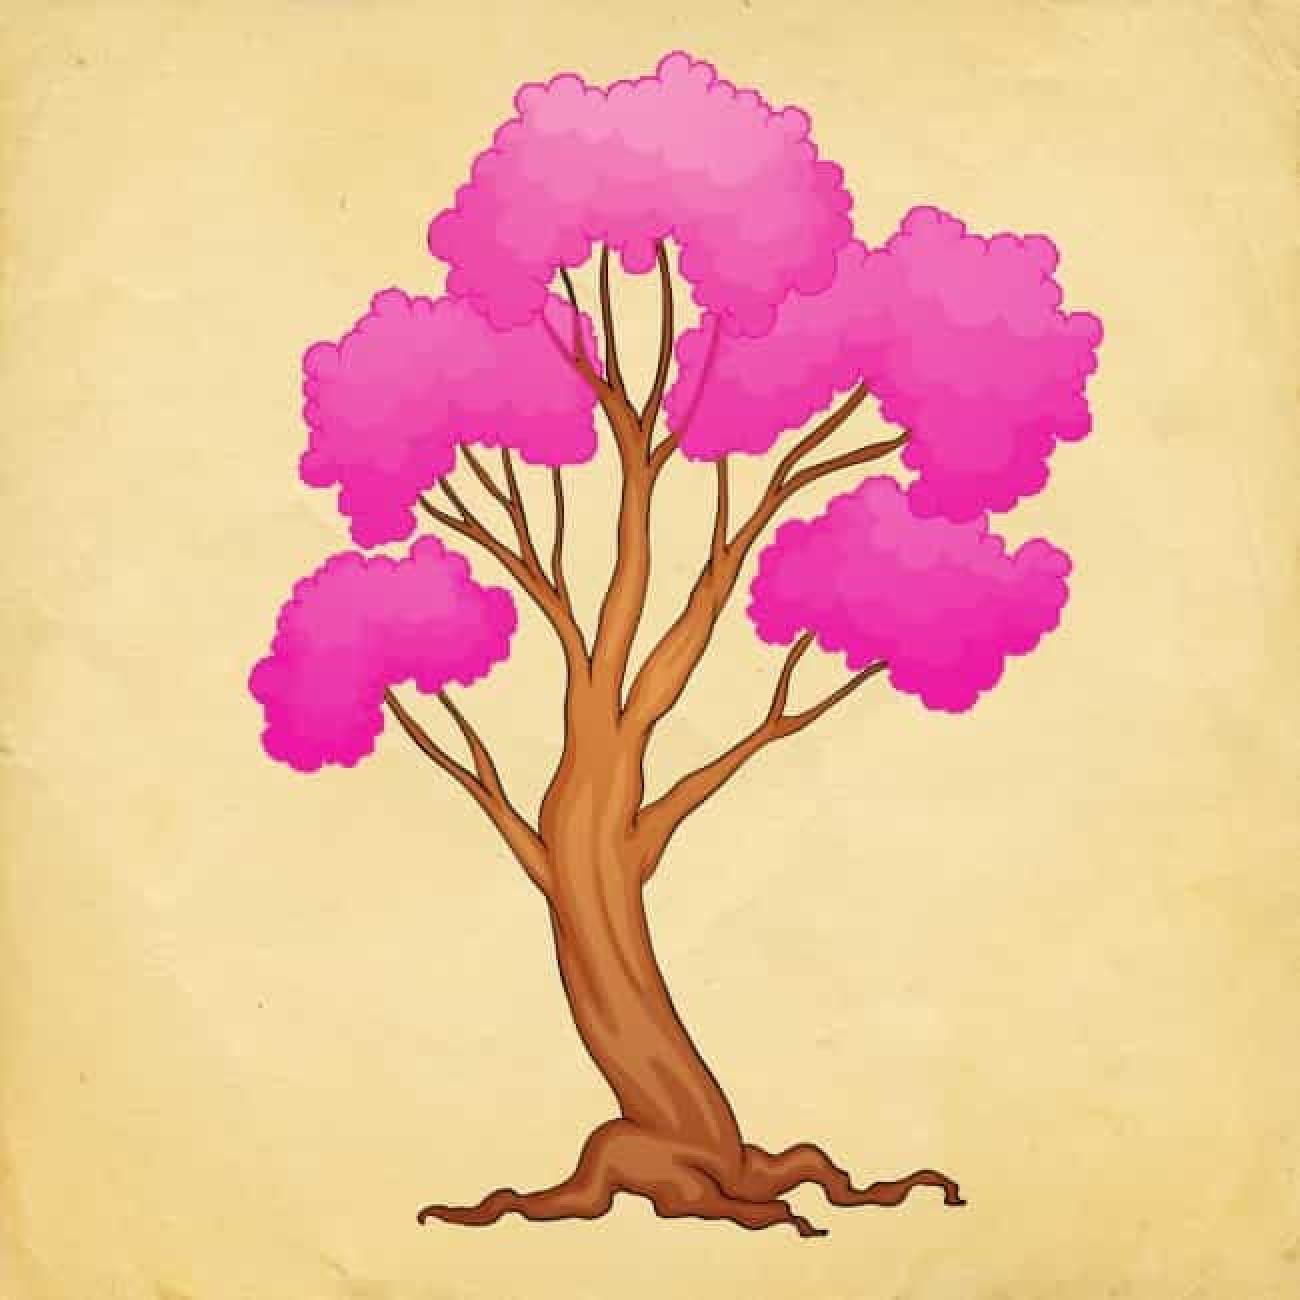 Ψυχολογικό τεστ: Το δέντρο που θα διαλέξεις σου δείχνει τις αλλαγές που θα έχεις το 2023